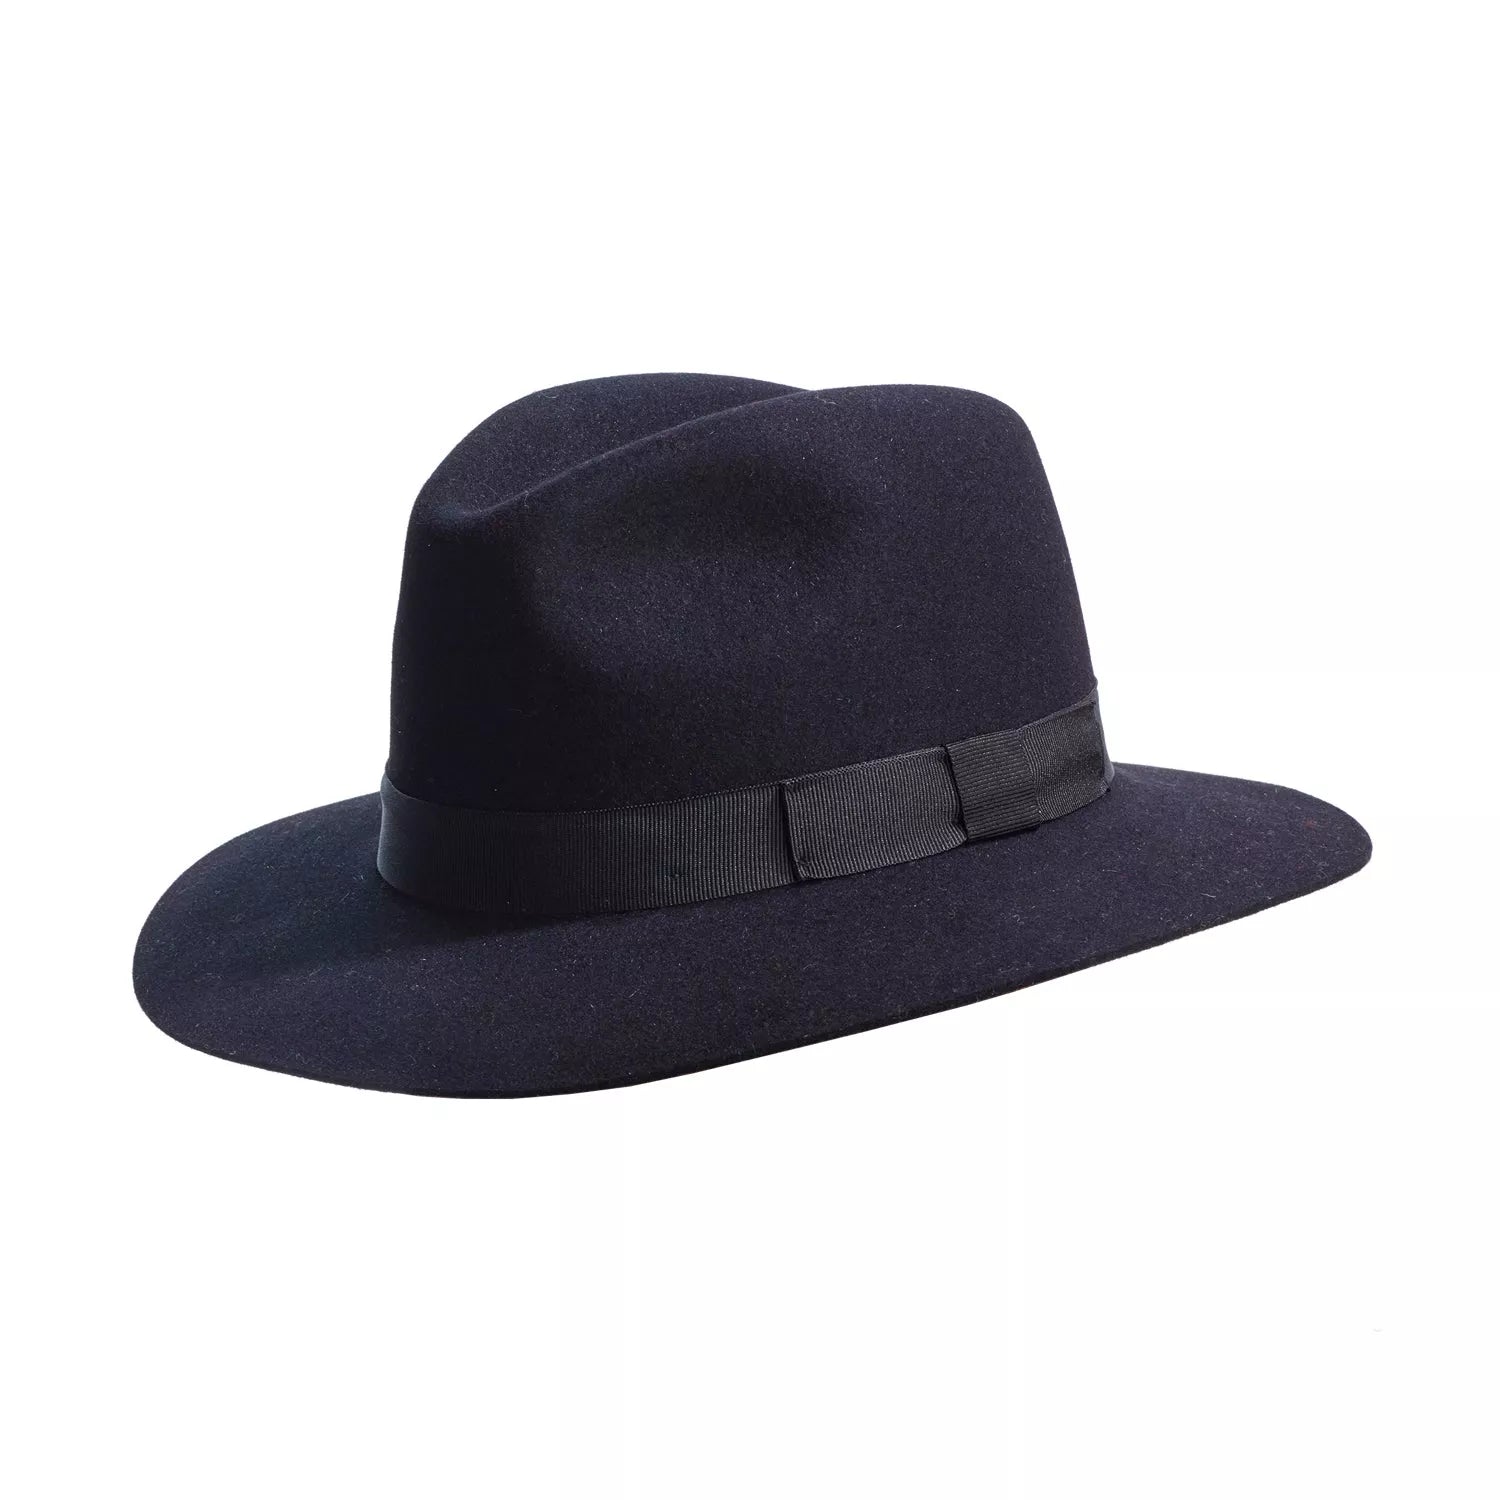 crushable black fedora hat